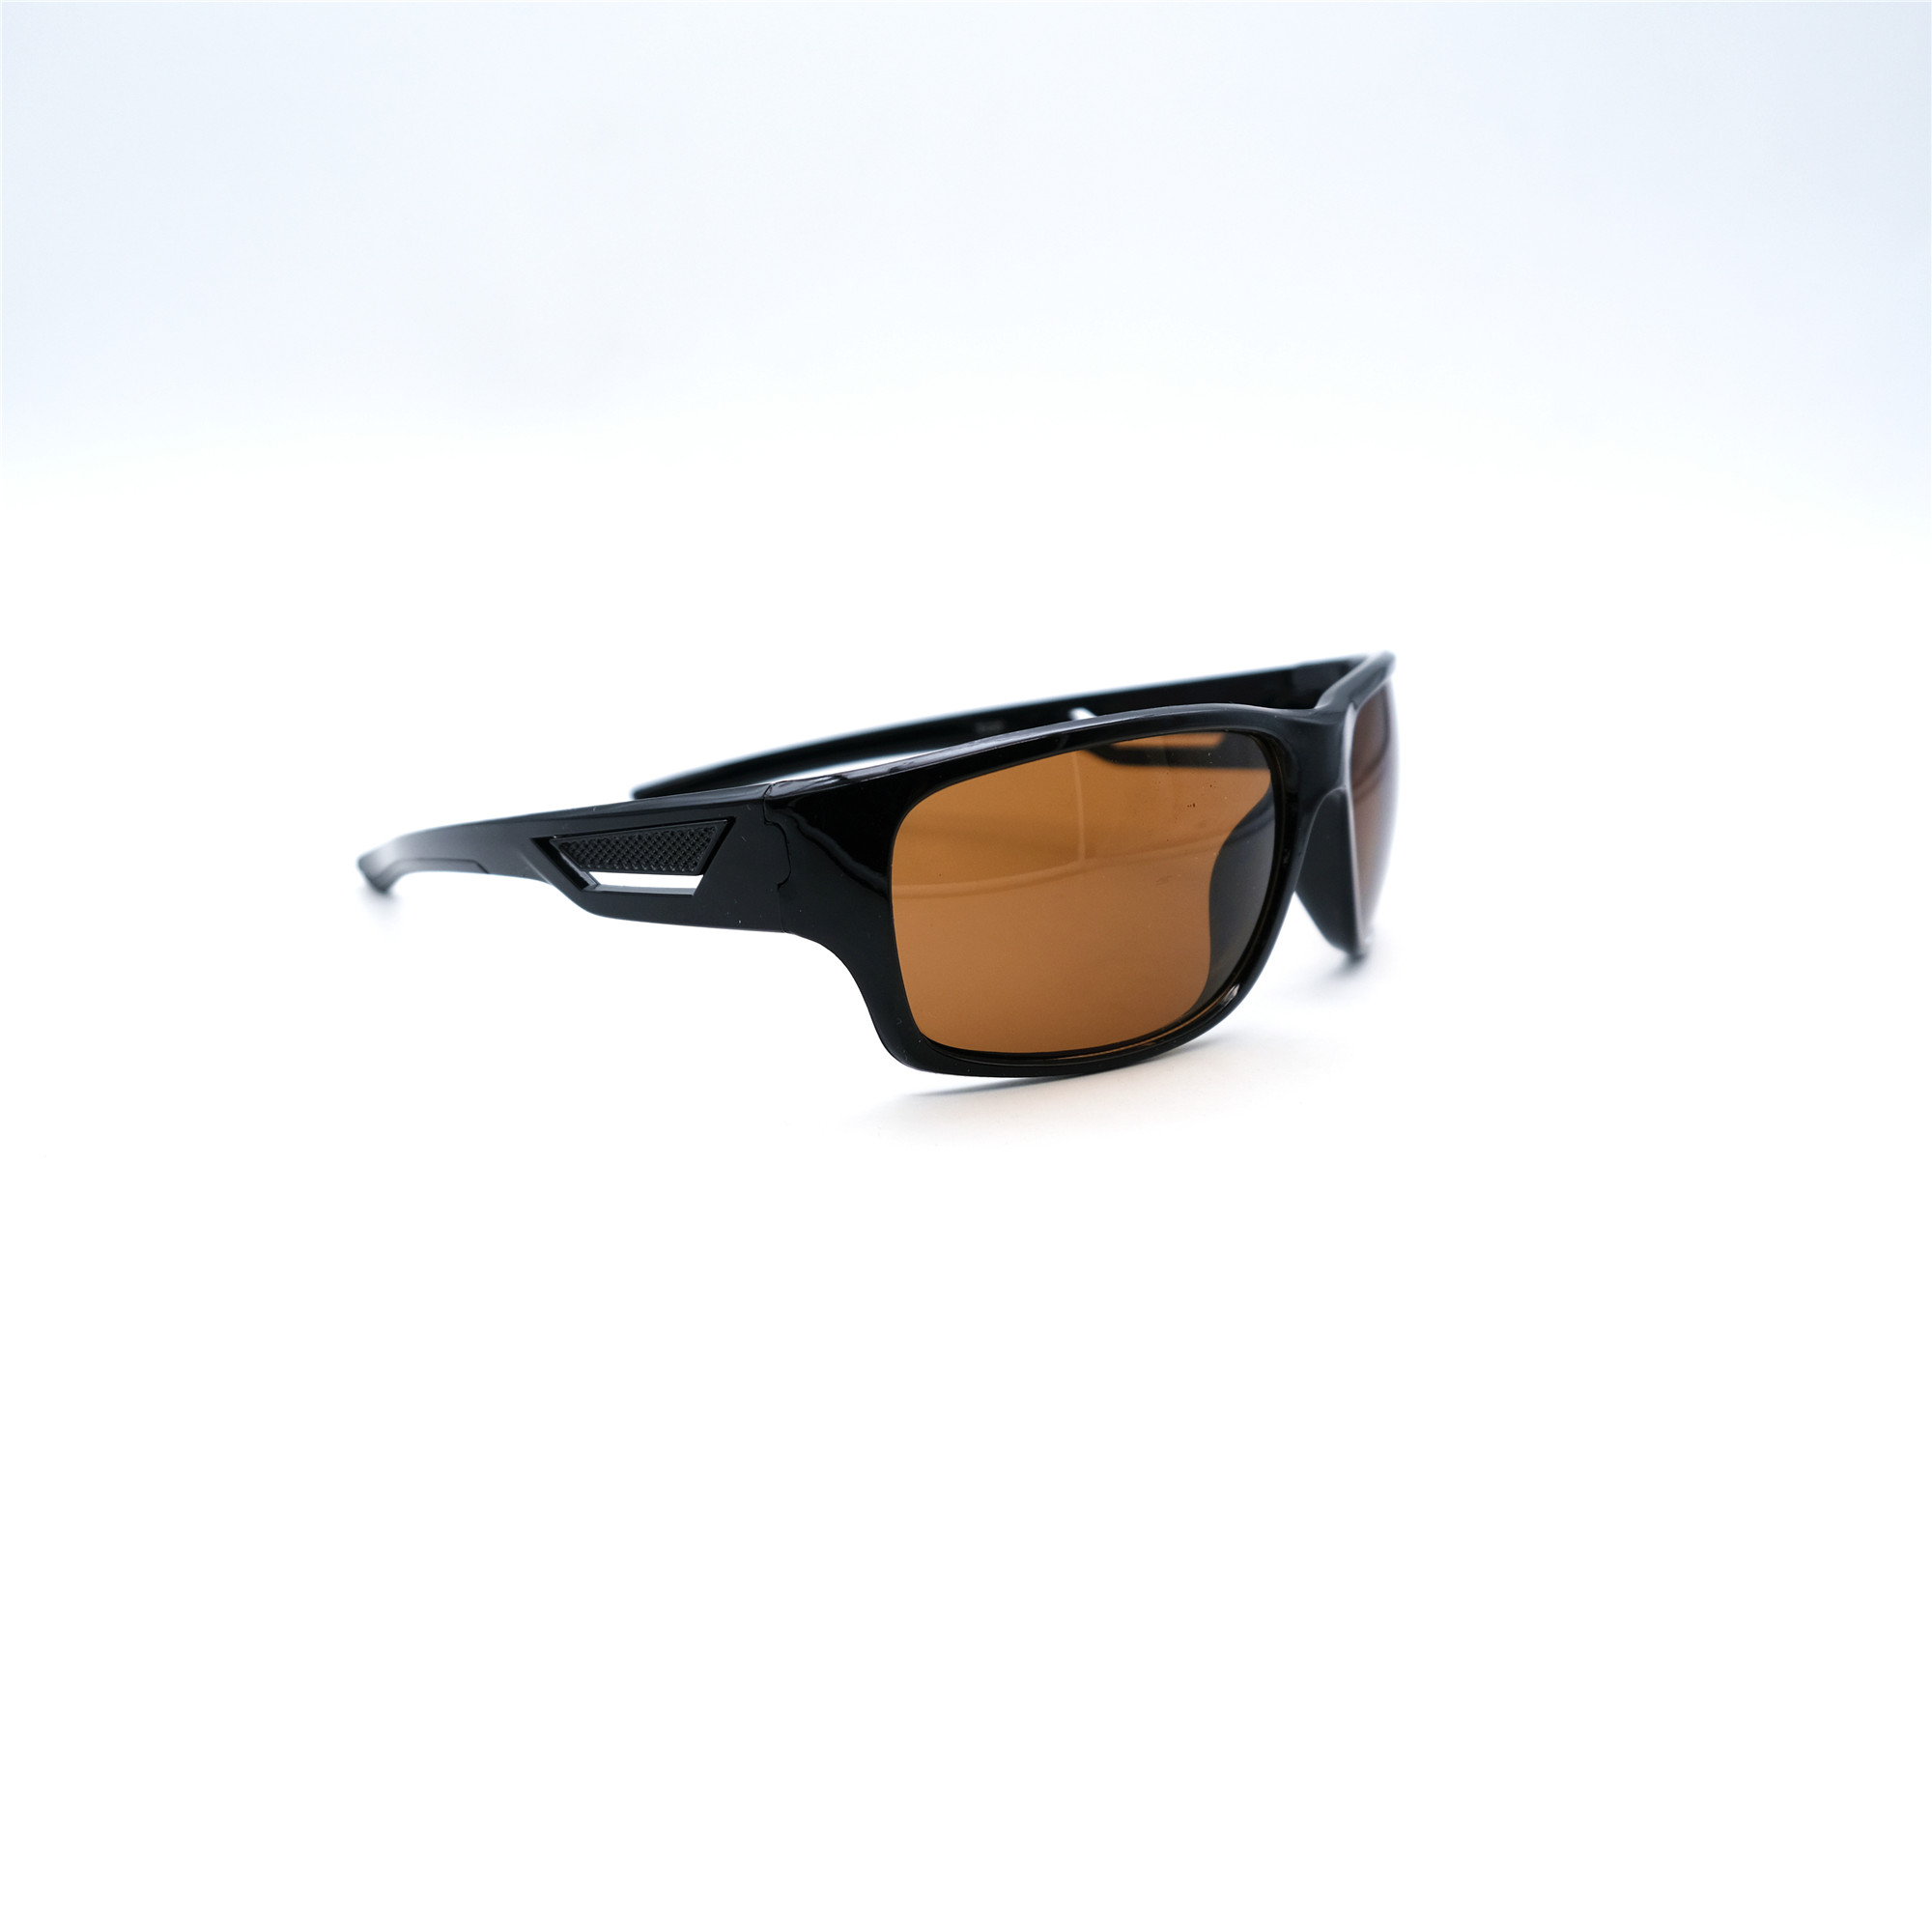  Солнцезащитные очки картинка Мужские Serit  Спорт S320-C2 